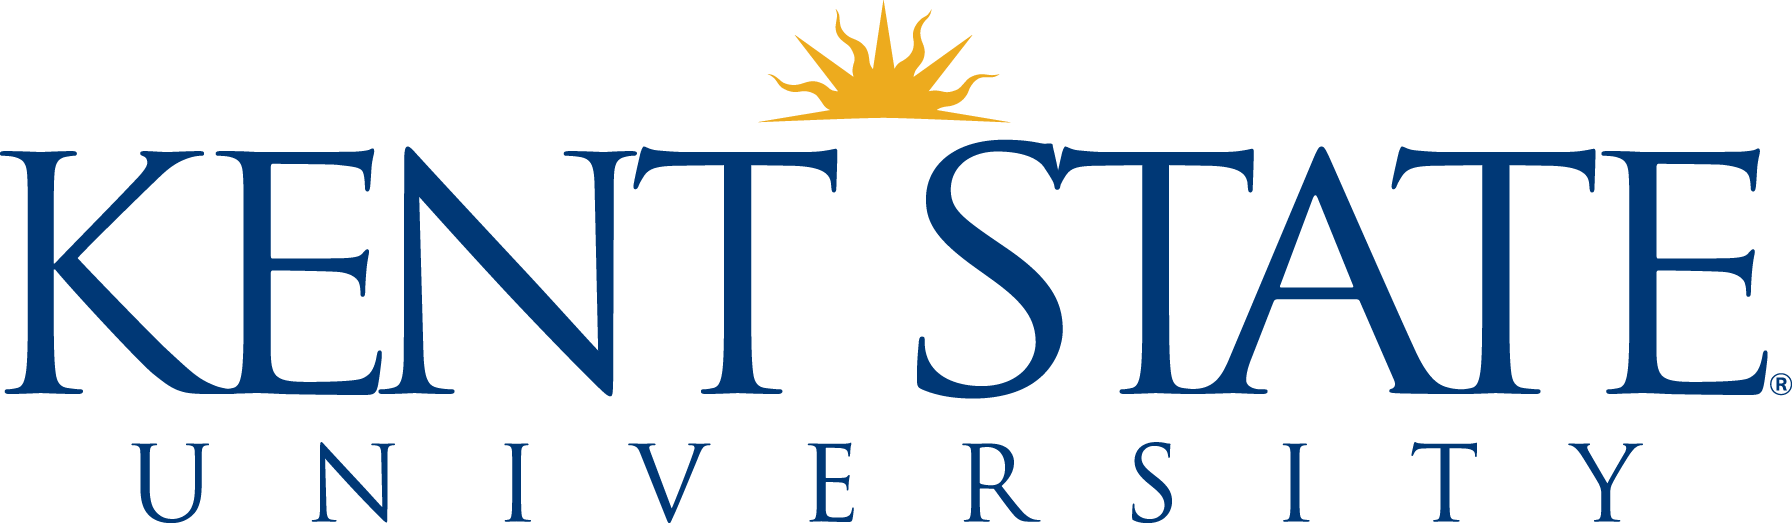 Kent State-logo